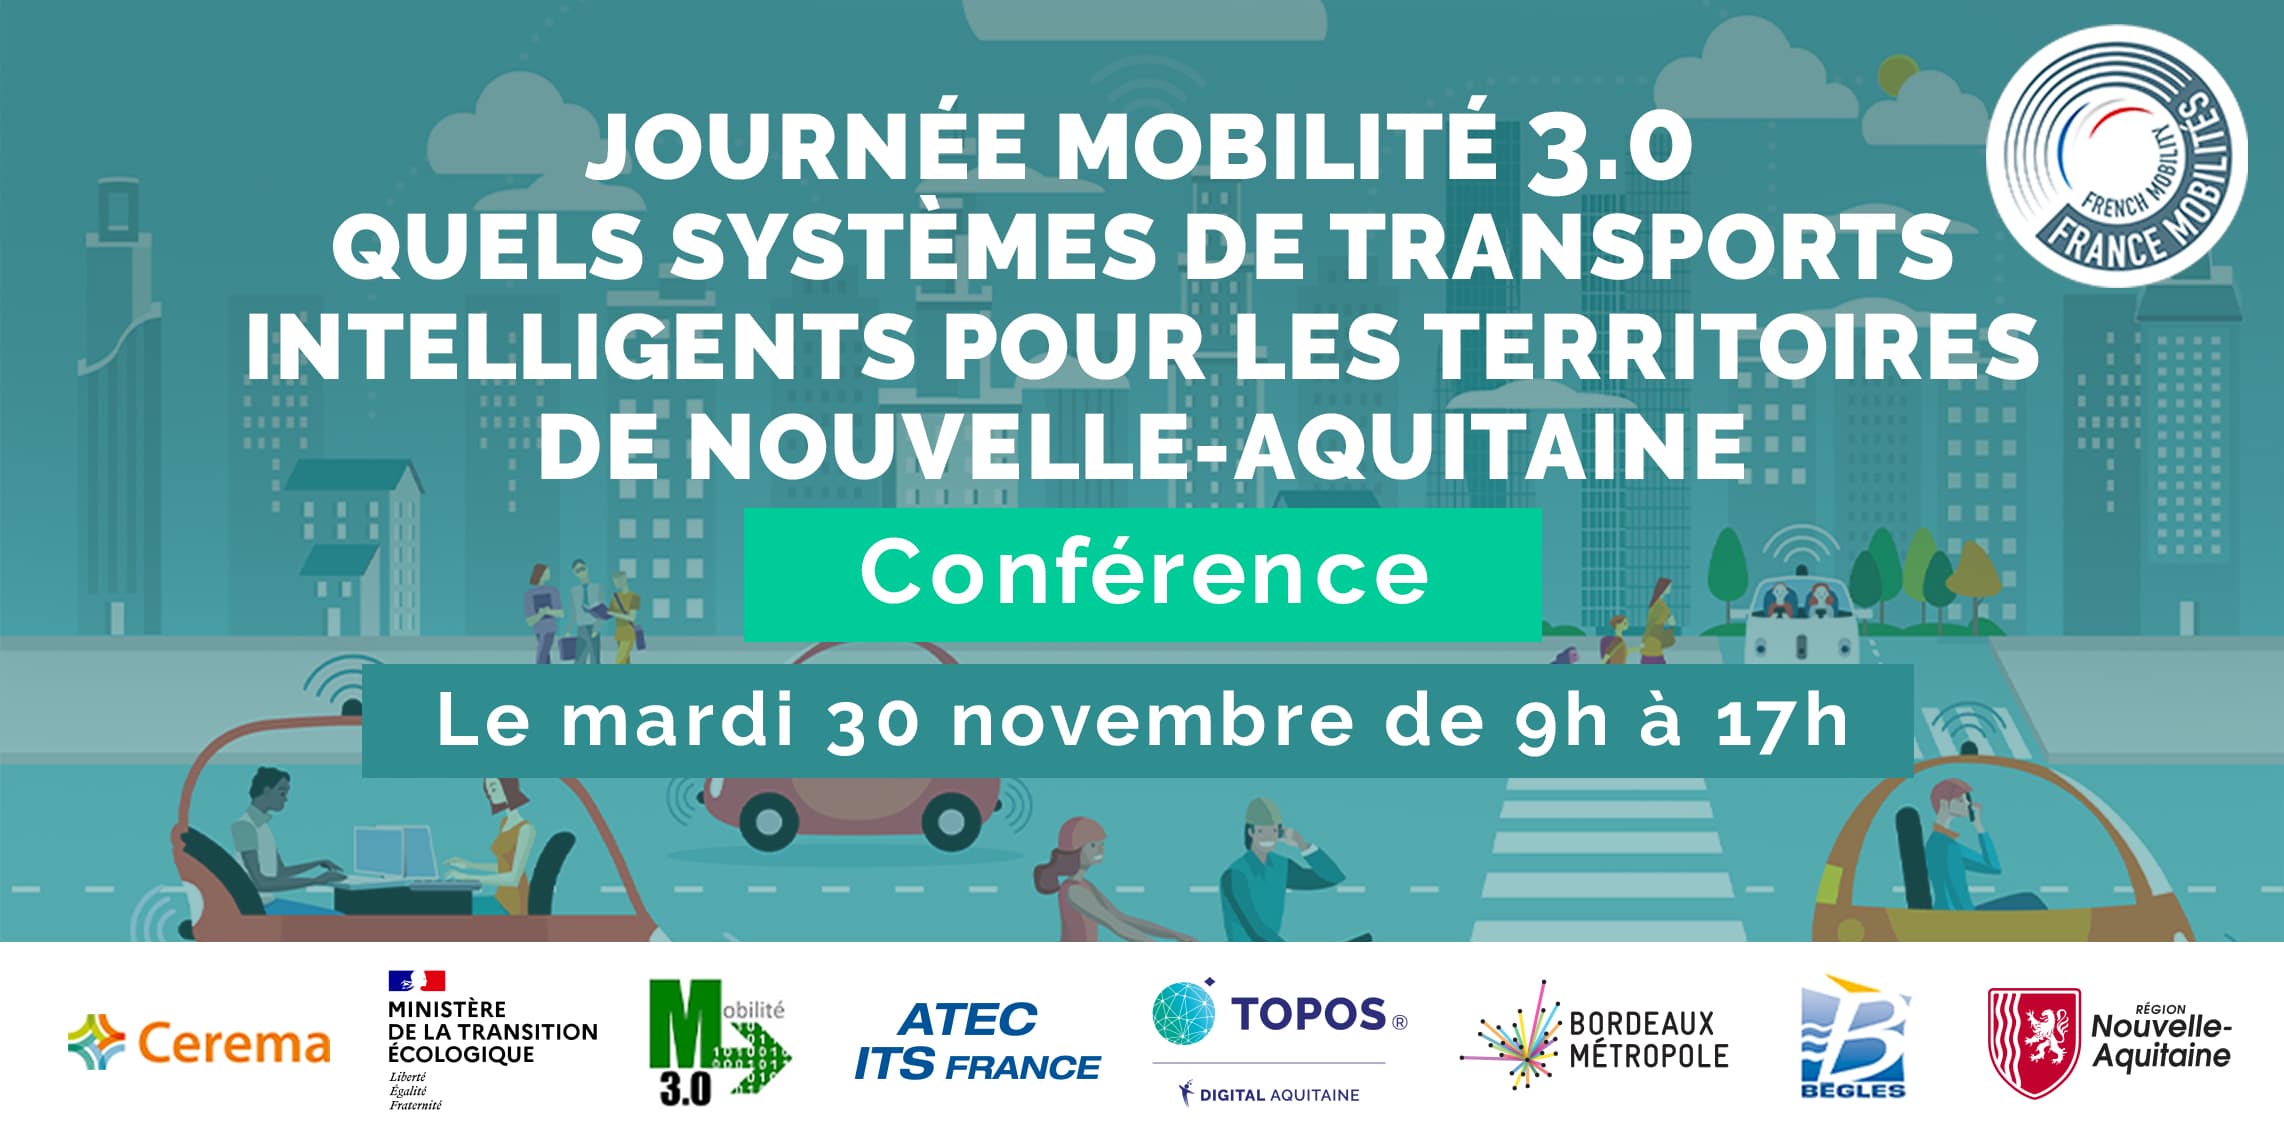 Journée mobilité 3.0 Nouvelle-Aquitaine